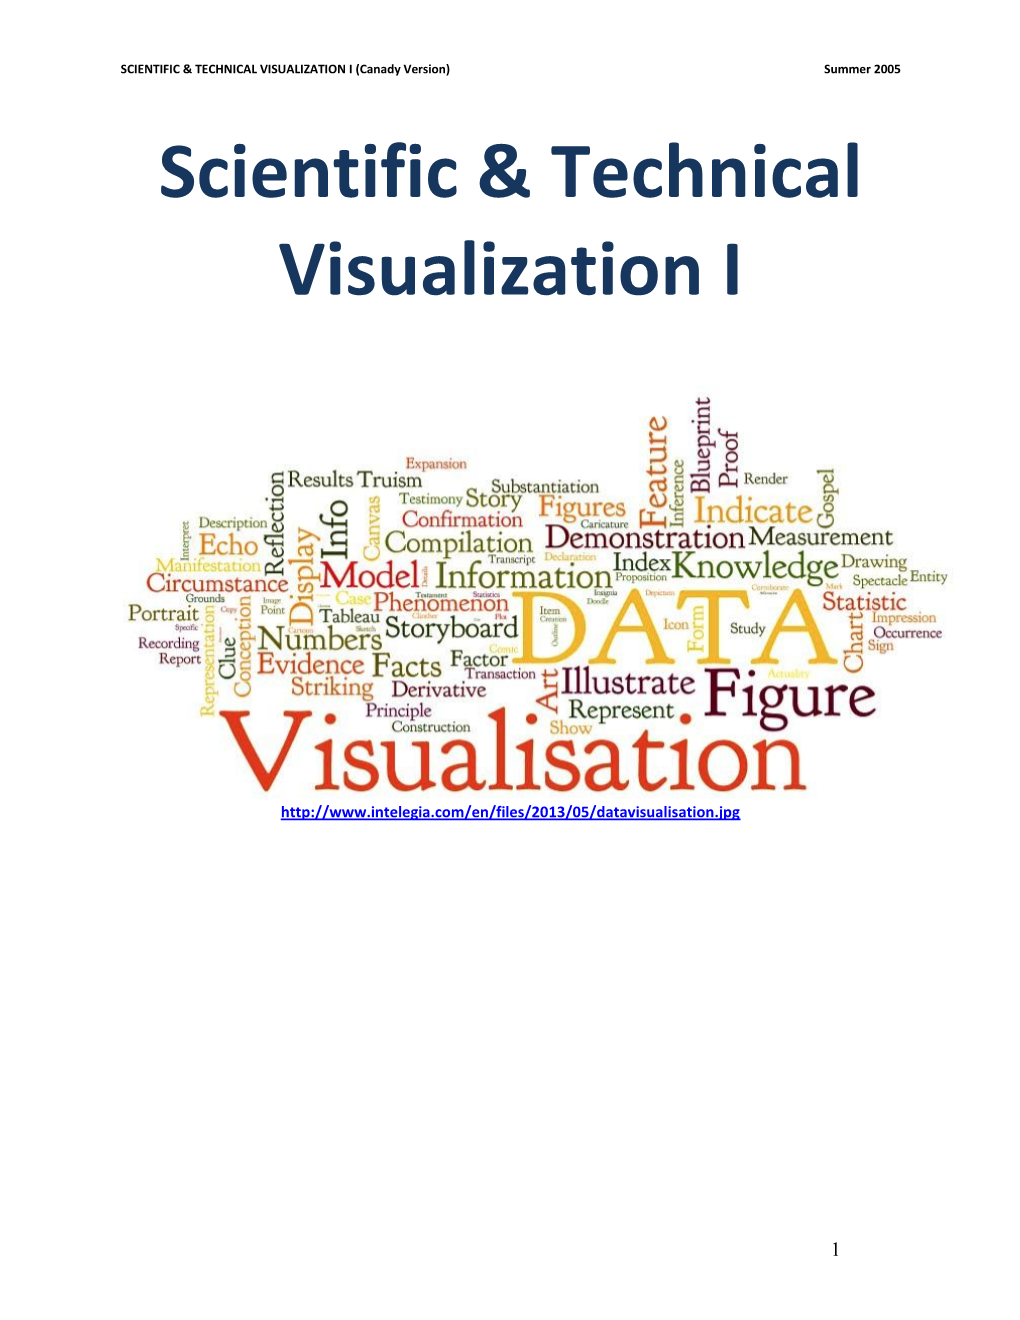 Scientific & Technical Visualization I